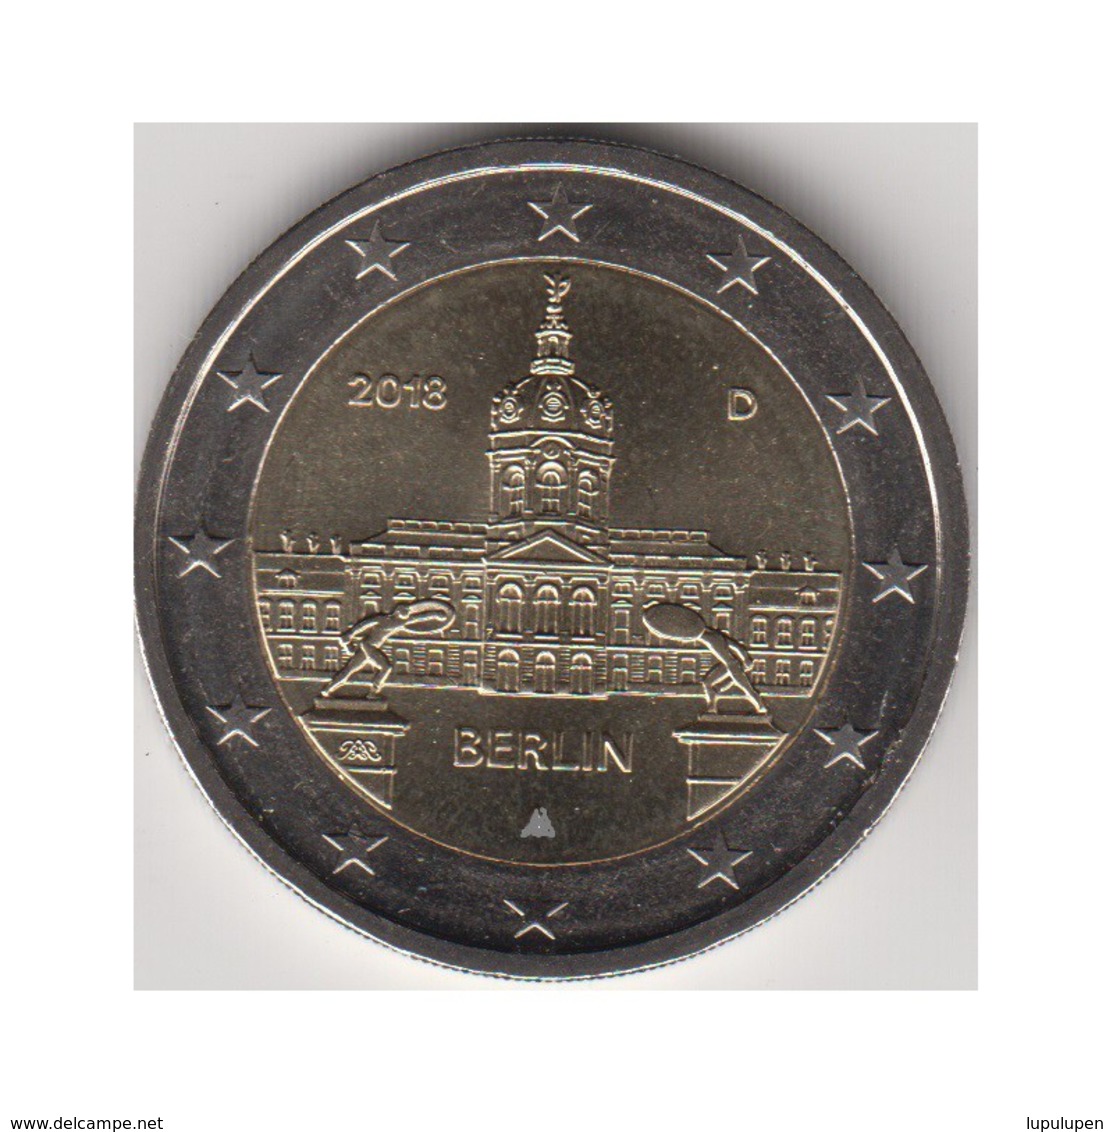 Monedas 2€ 2018 Alemania "Berlin" - Alemania